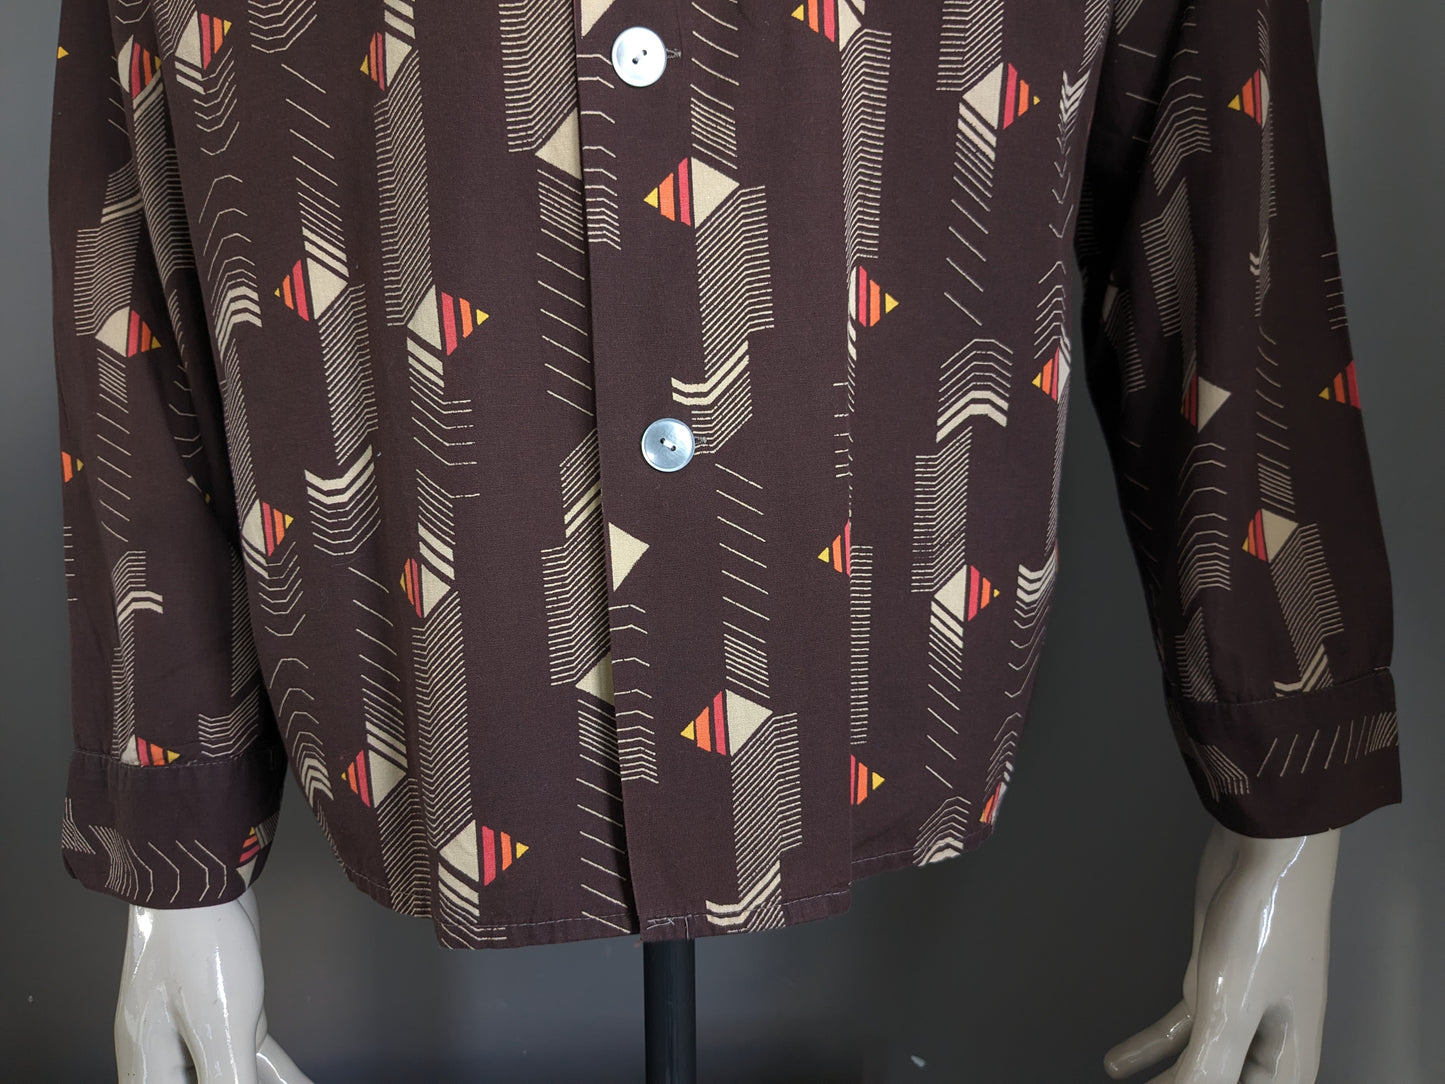 Shirt de Fourman des années 70 vintage avec collier. Impression jaune orange rouge marron. Taille 2xl / xxl.